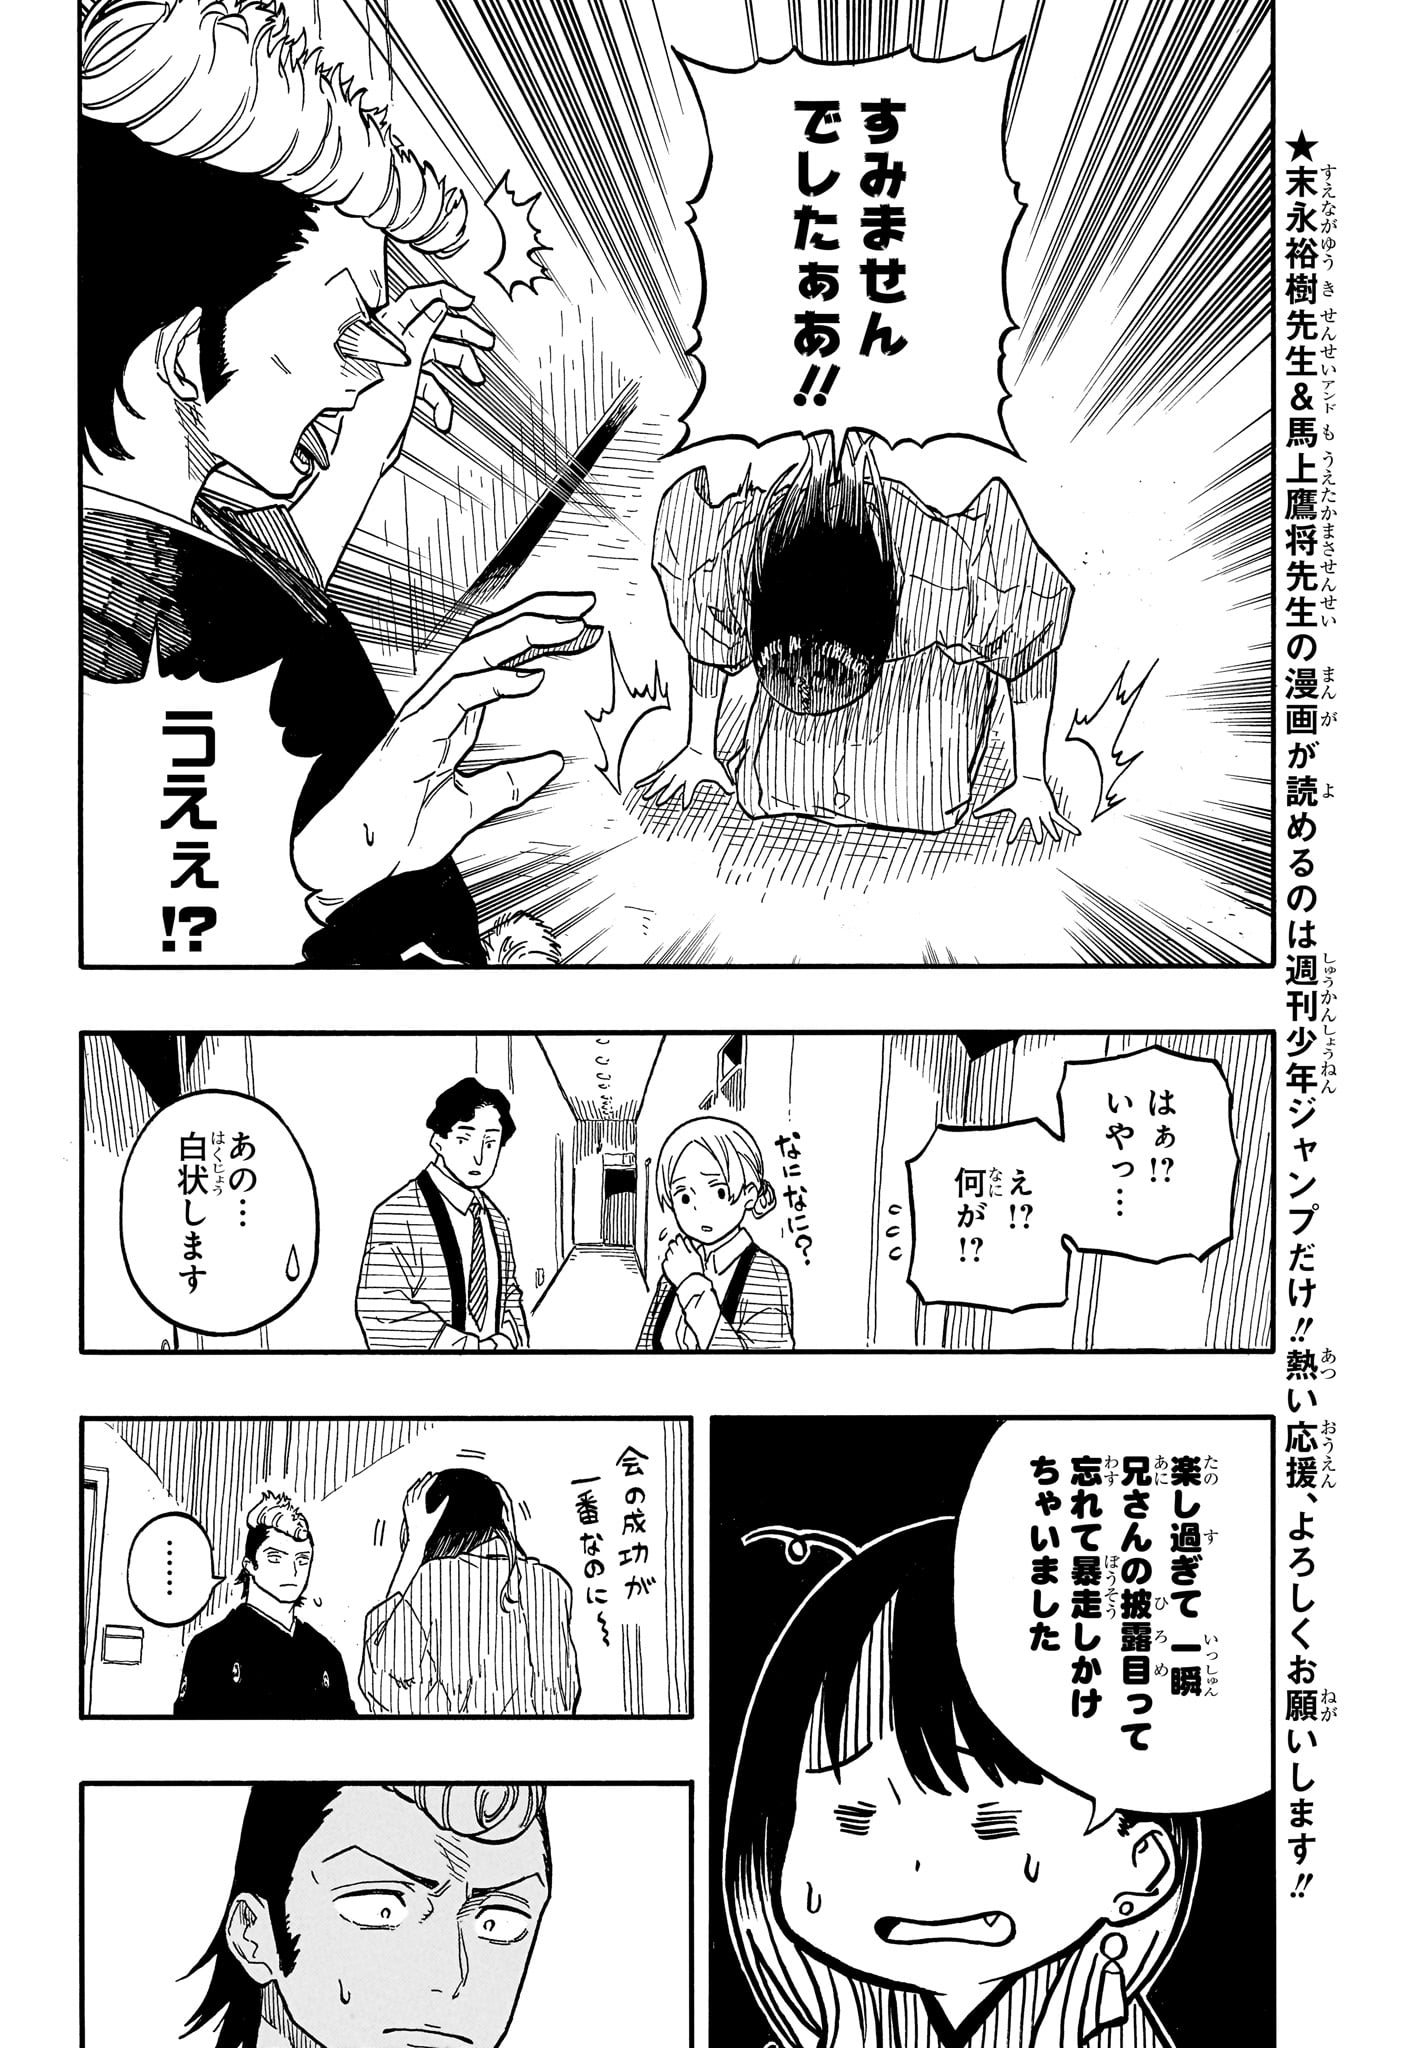 Akane-Banashi - Chapter 102 - Page 4